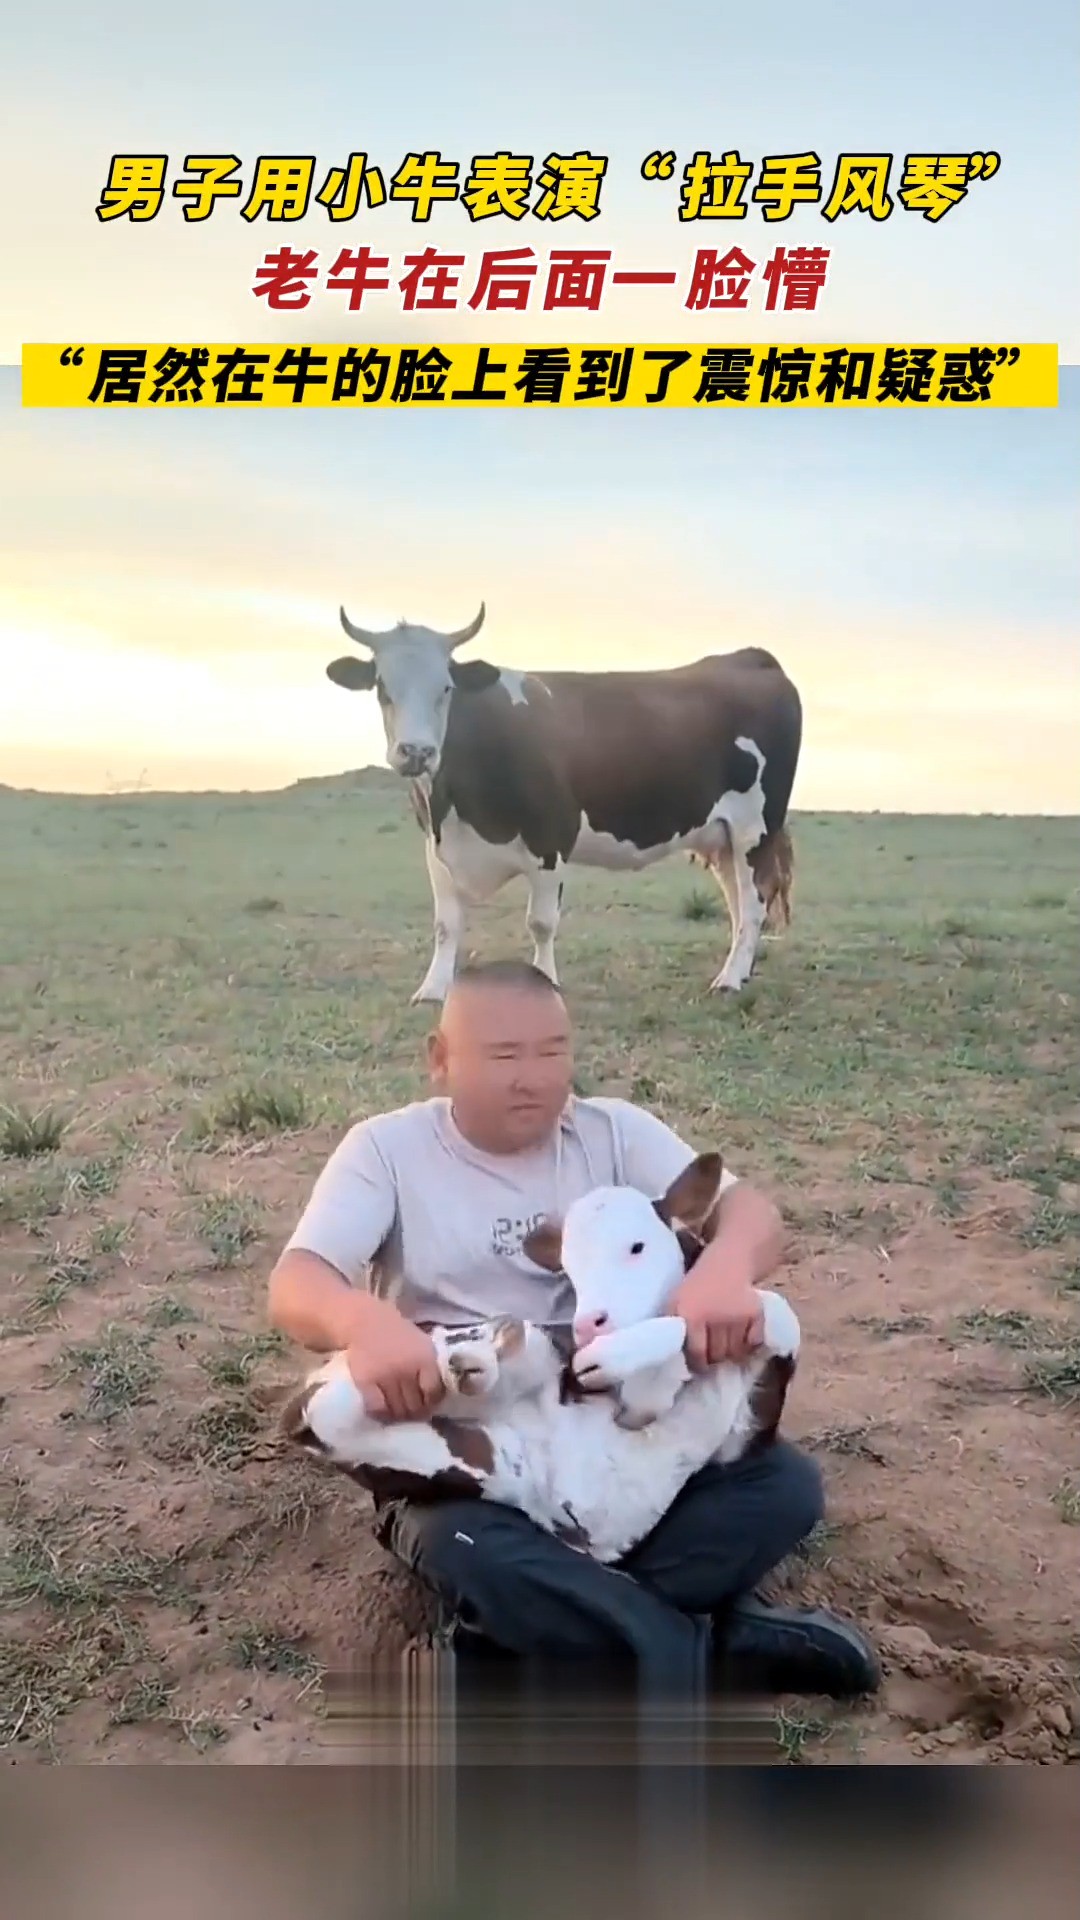 男子用小牛表演“拉手风琴”_老牛在后面一脸懵